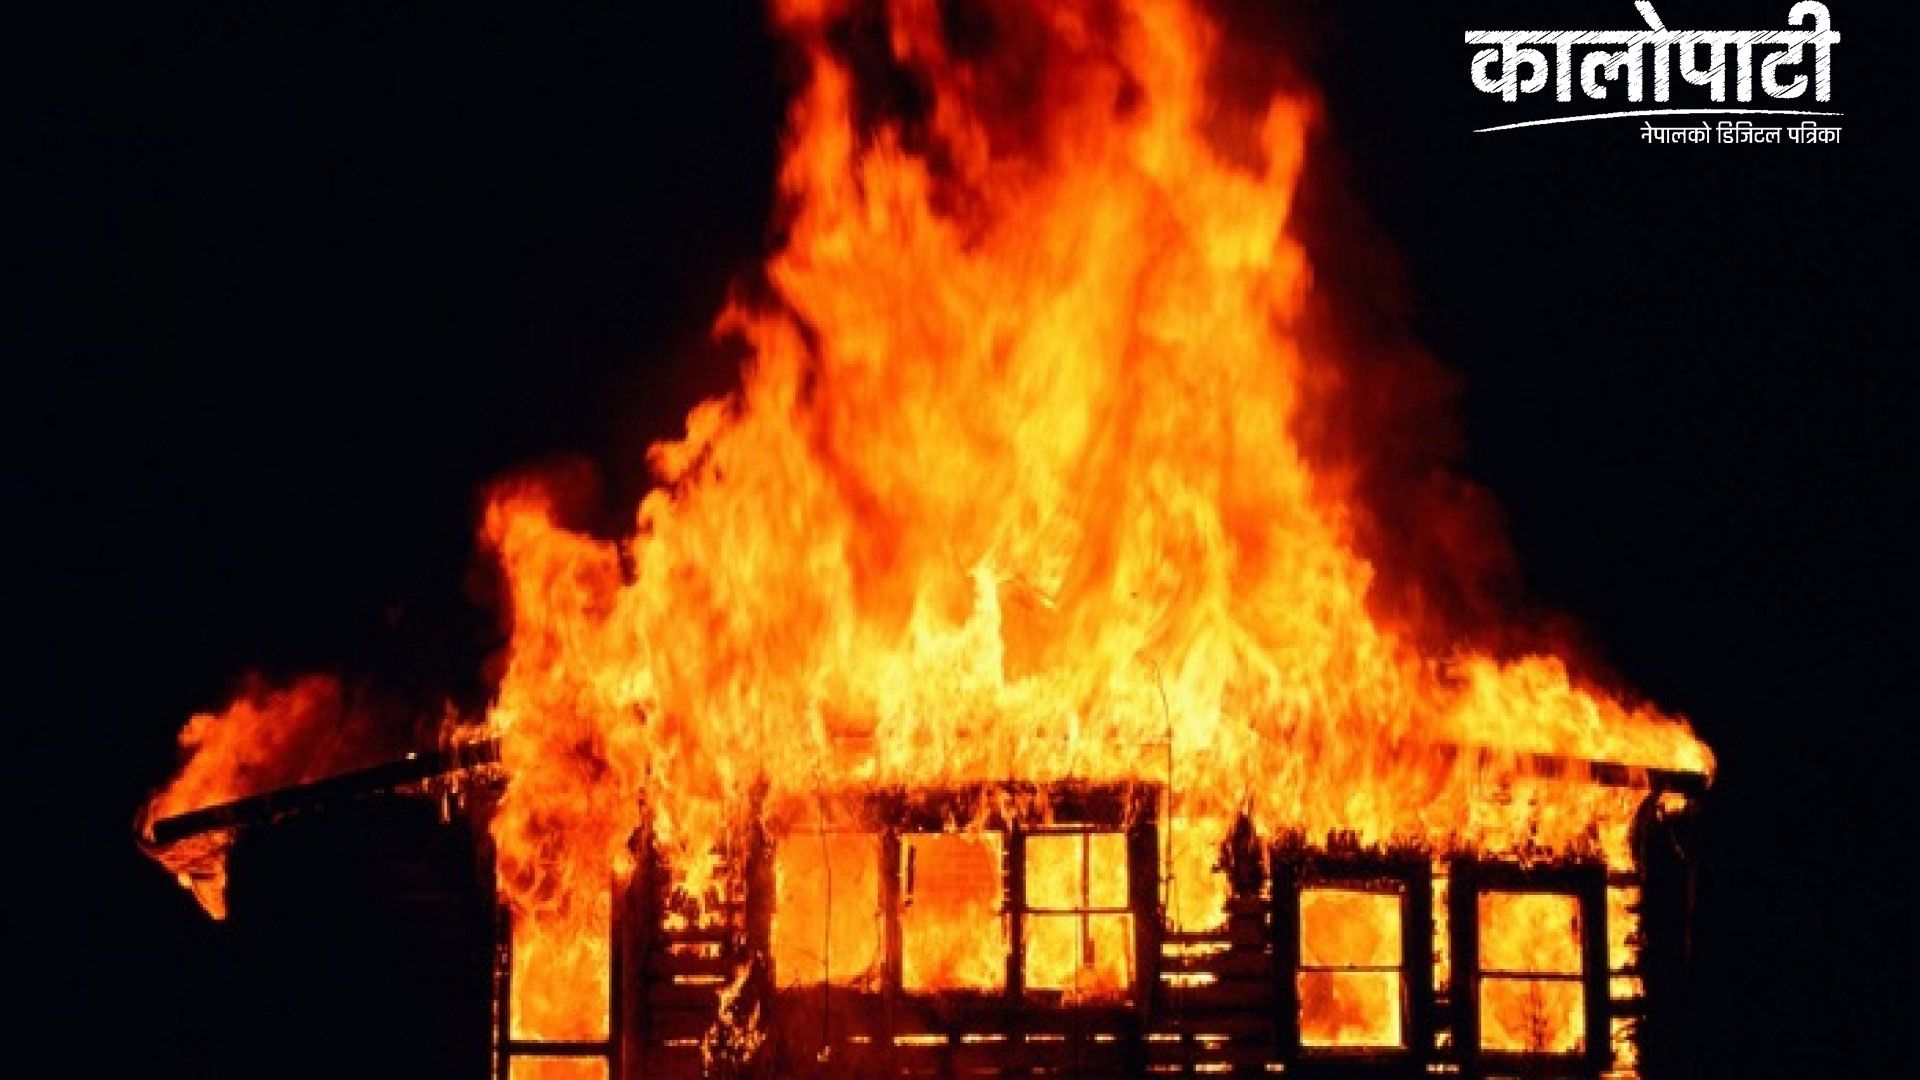 भीषण आगलागीबाट २० घर जली करोडौँको क्षति